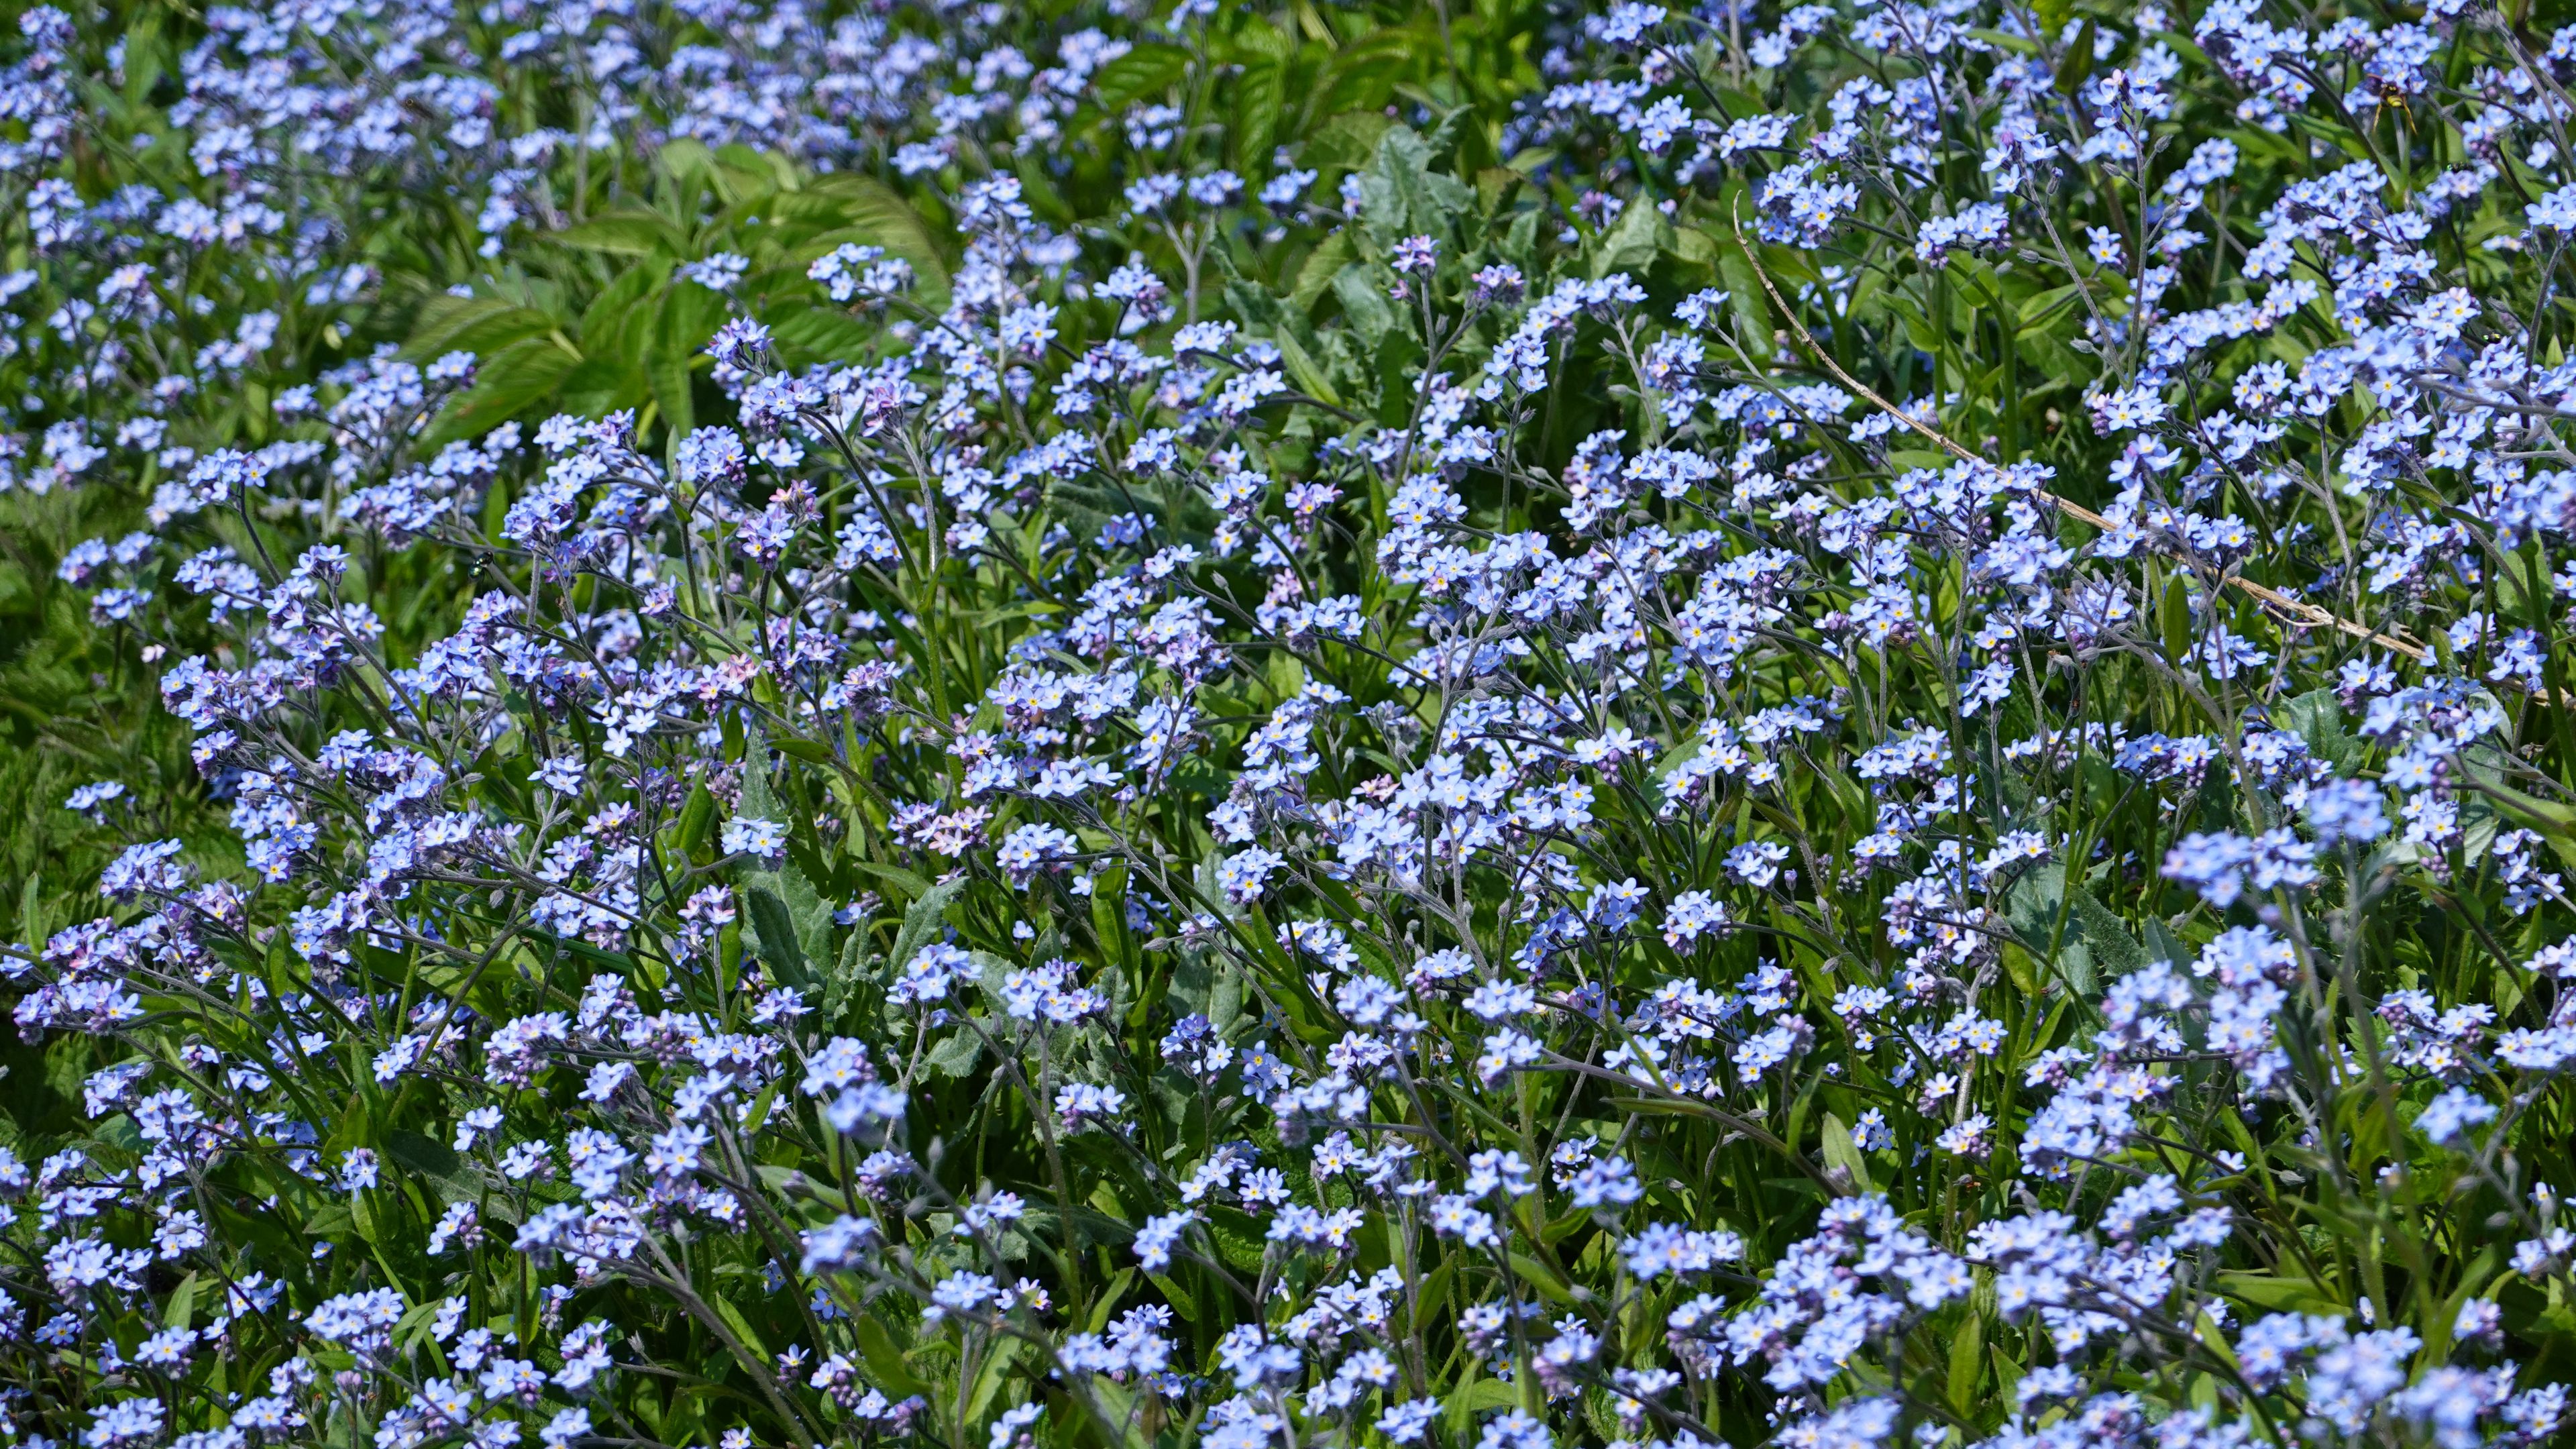 Download wallpaper 3840x2160 flowers, plants, field, blue 4k uhd 16:9 ...